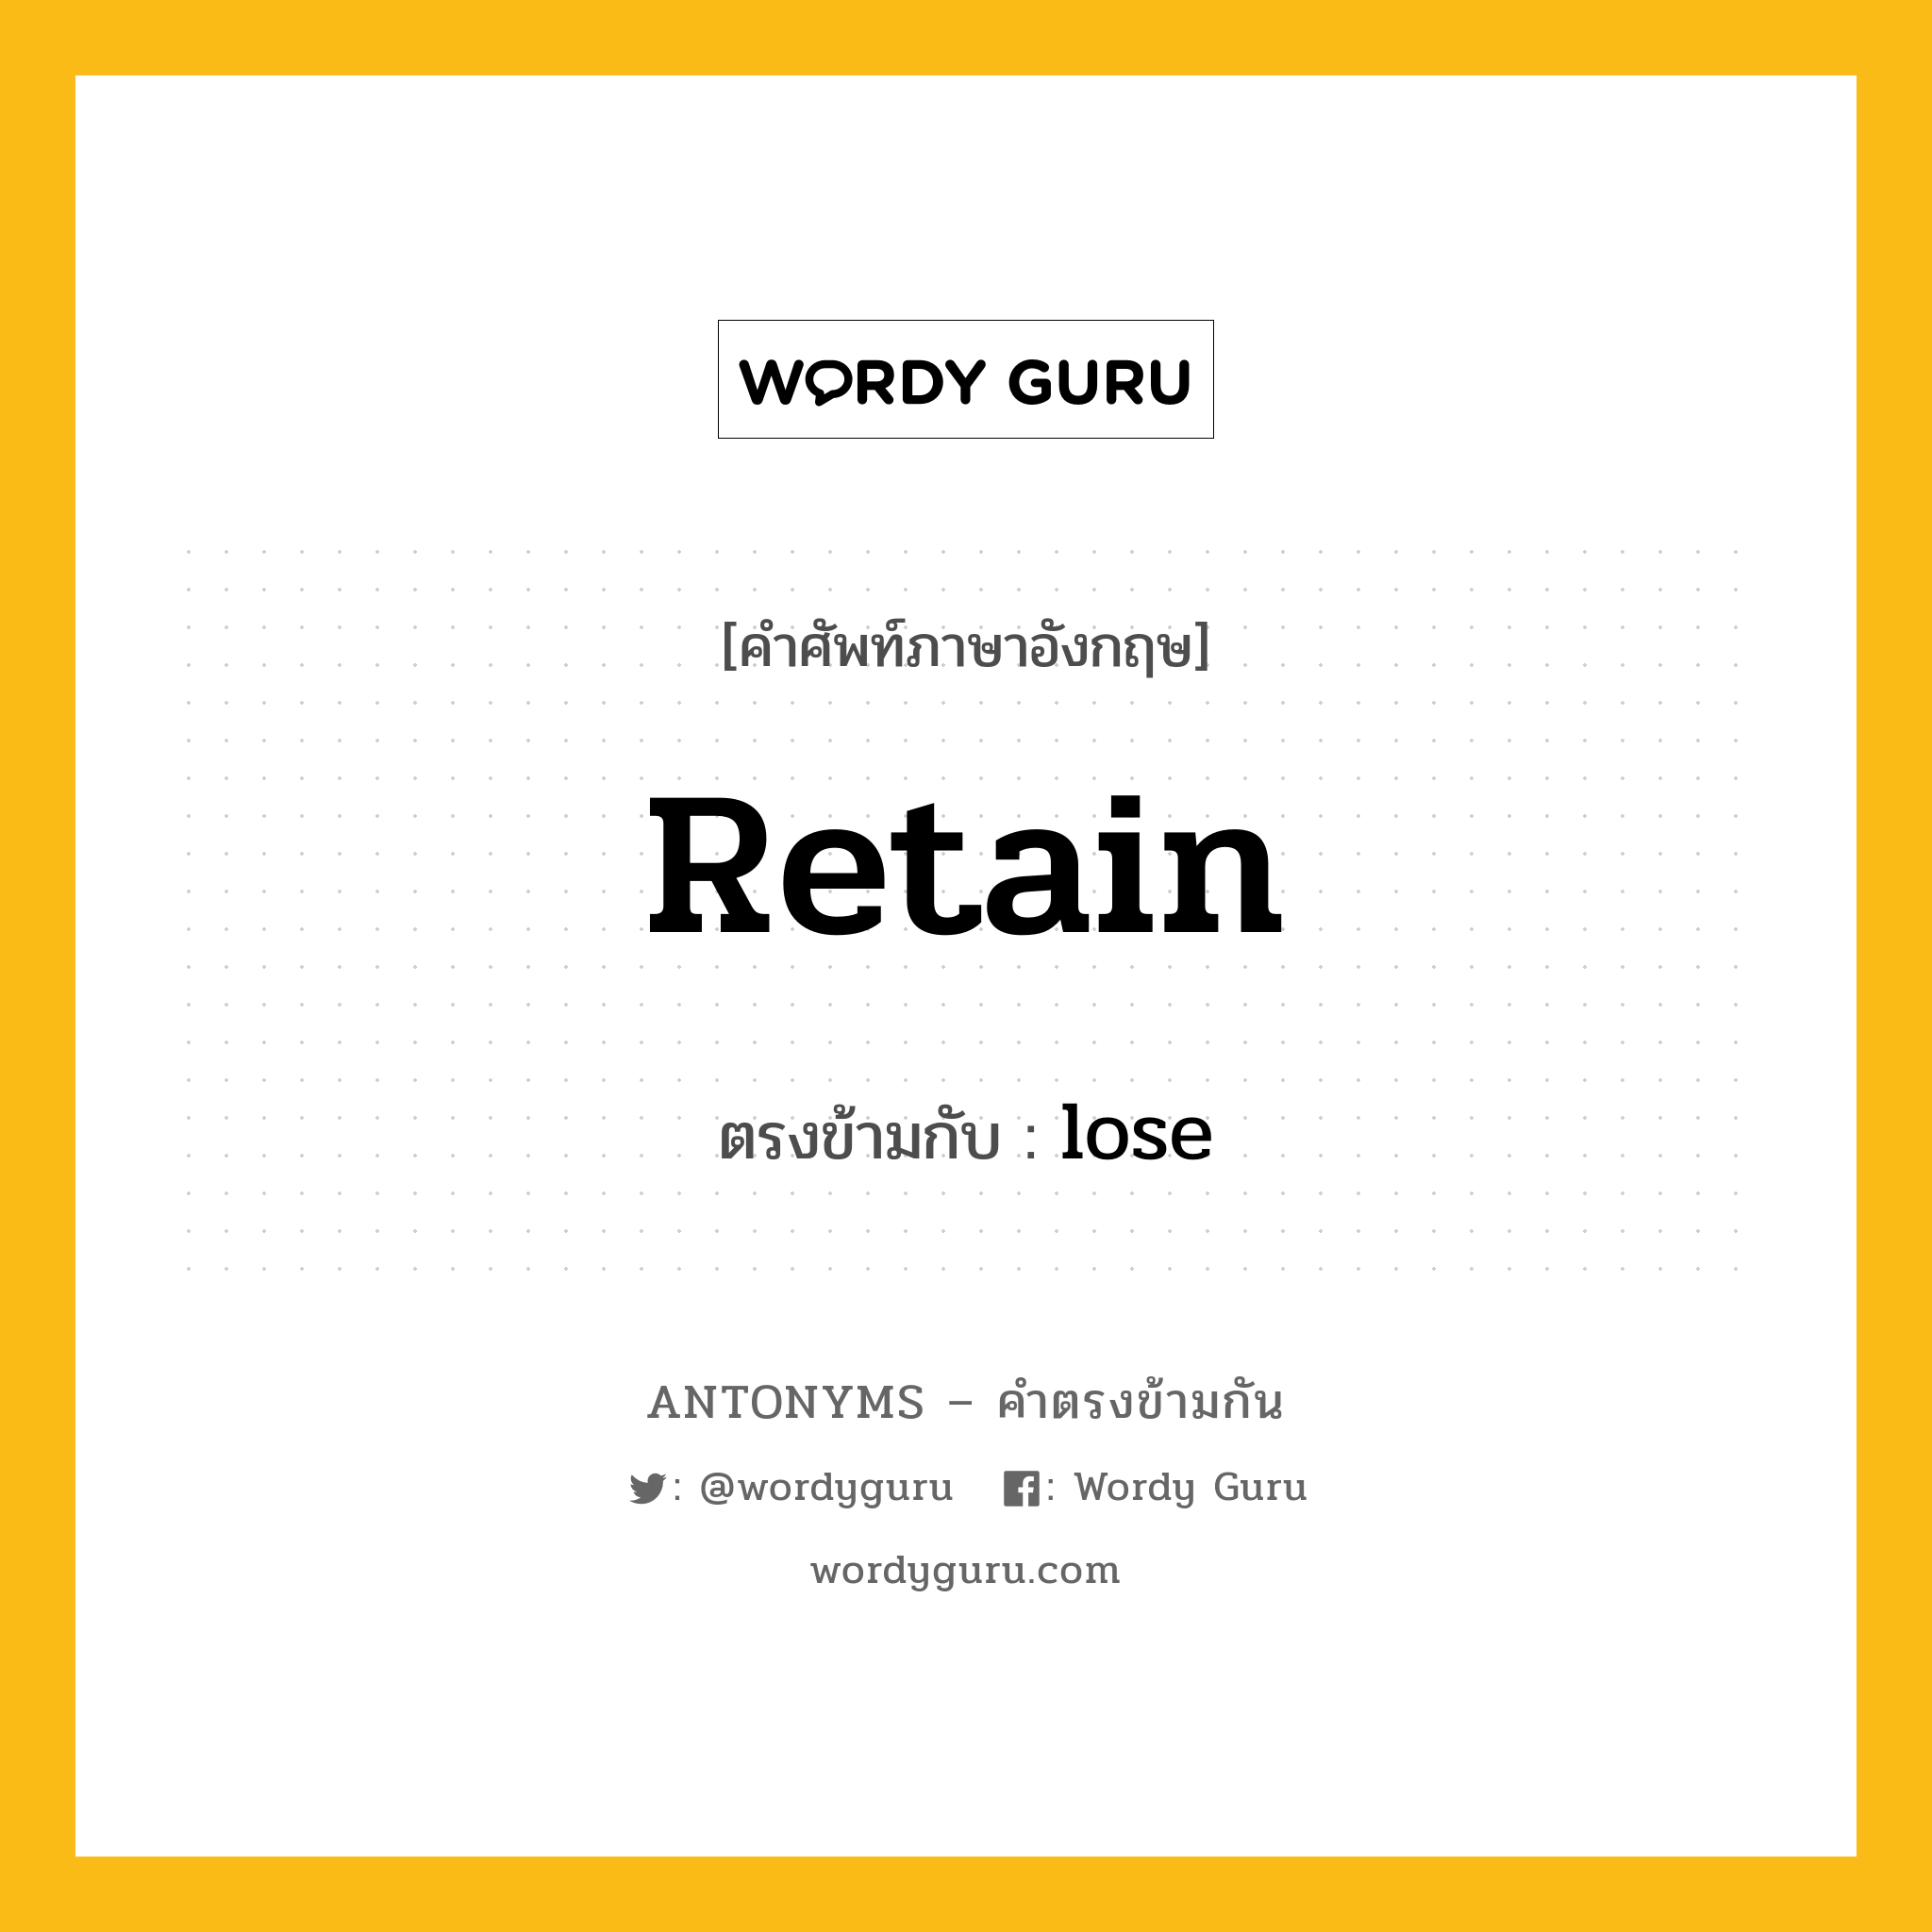 retain เป็นคำตรงข้ามกับคำไหนบ้าง?, คำศัพท์ภาษาอังกฤษ retain ตรงข้ามกับ lose หมวด lose